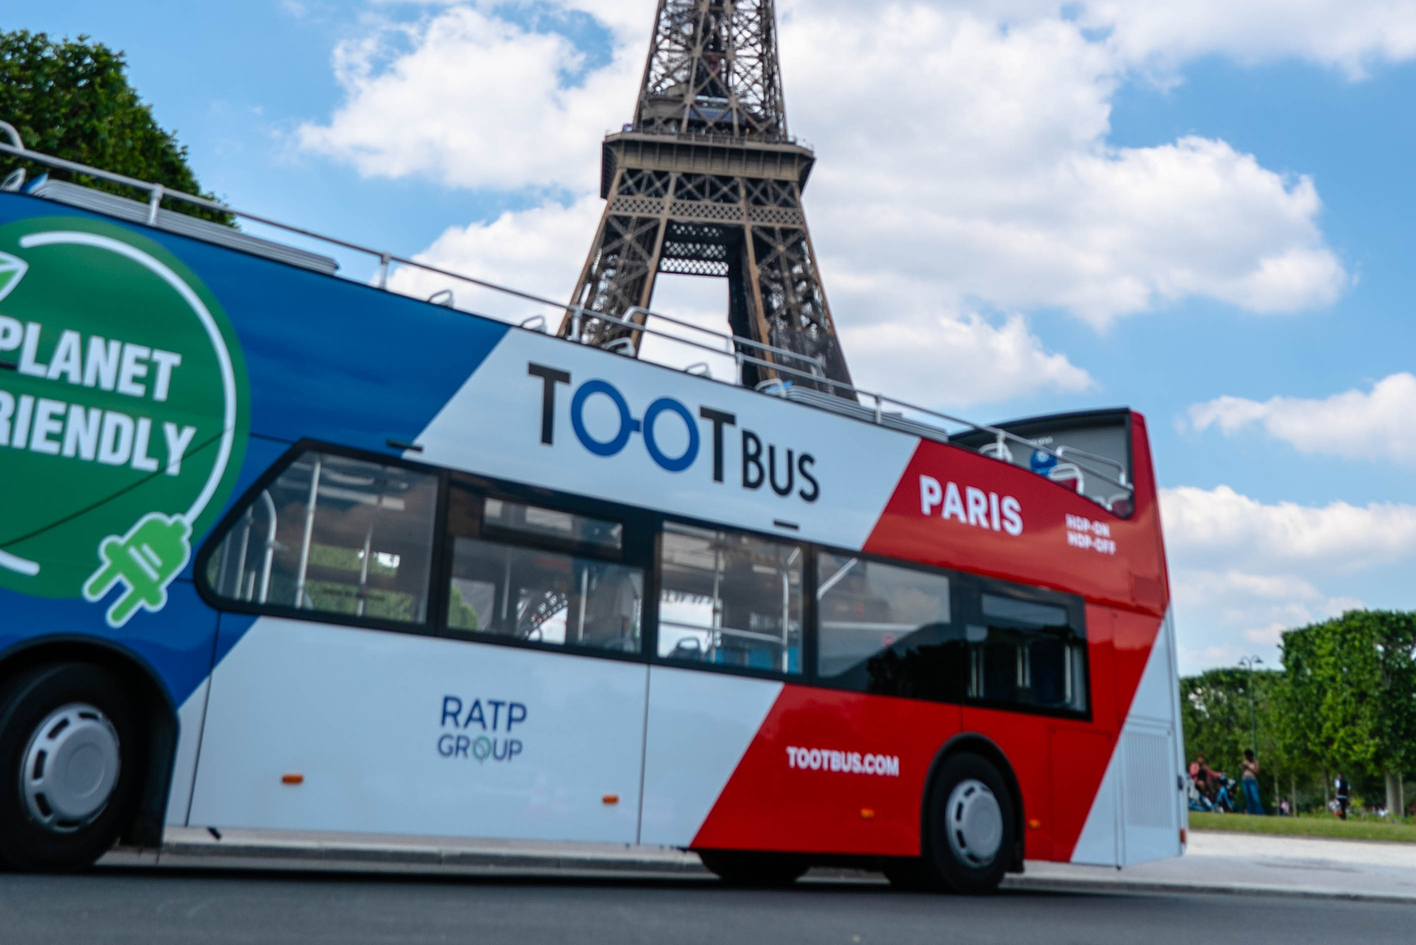 E-billet TOOTBus Paris -Tour de Paris  - Enfant 1 jour   - valid 6 mois - Envoi sous 24h